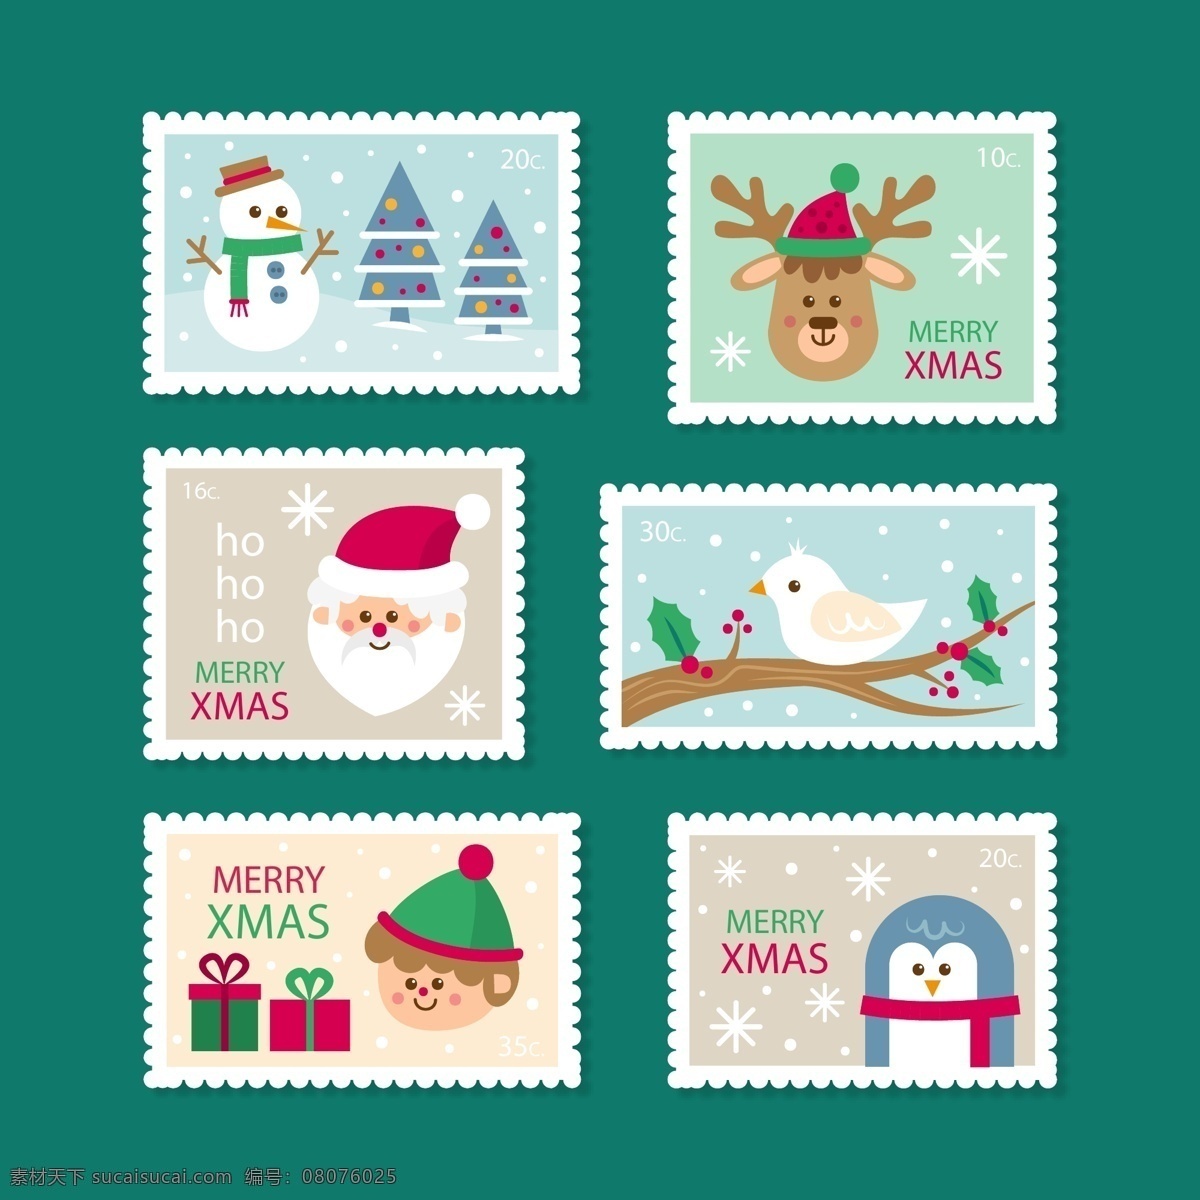 下雪 主题 圣诞 标签 礼物 雪花 圣诞节 矢量素材 圣诞老人 驯鹿 雪人 企鹅 邮票